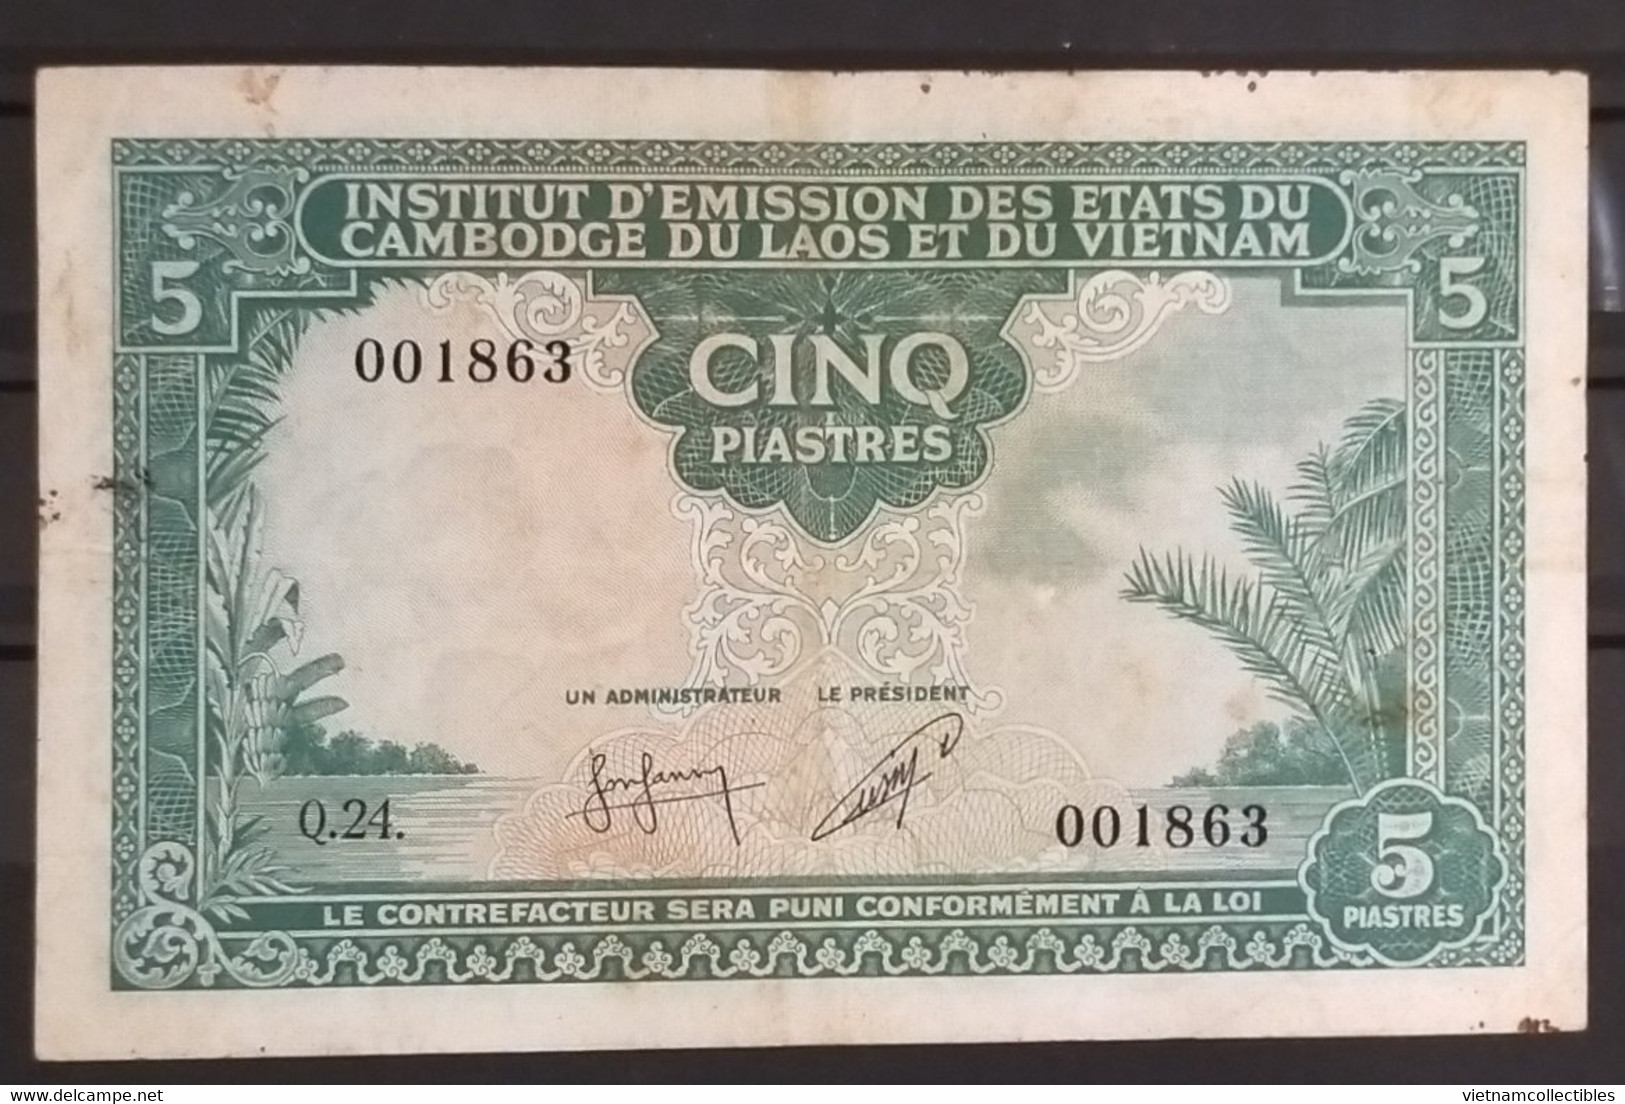 Indochina Indochine Vietnam Viet Nam Laos Cambodia 5 Piastres VF Banknote Note / Billet 1953 - Pick # 95 / 02 Photo - Indochine